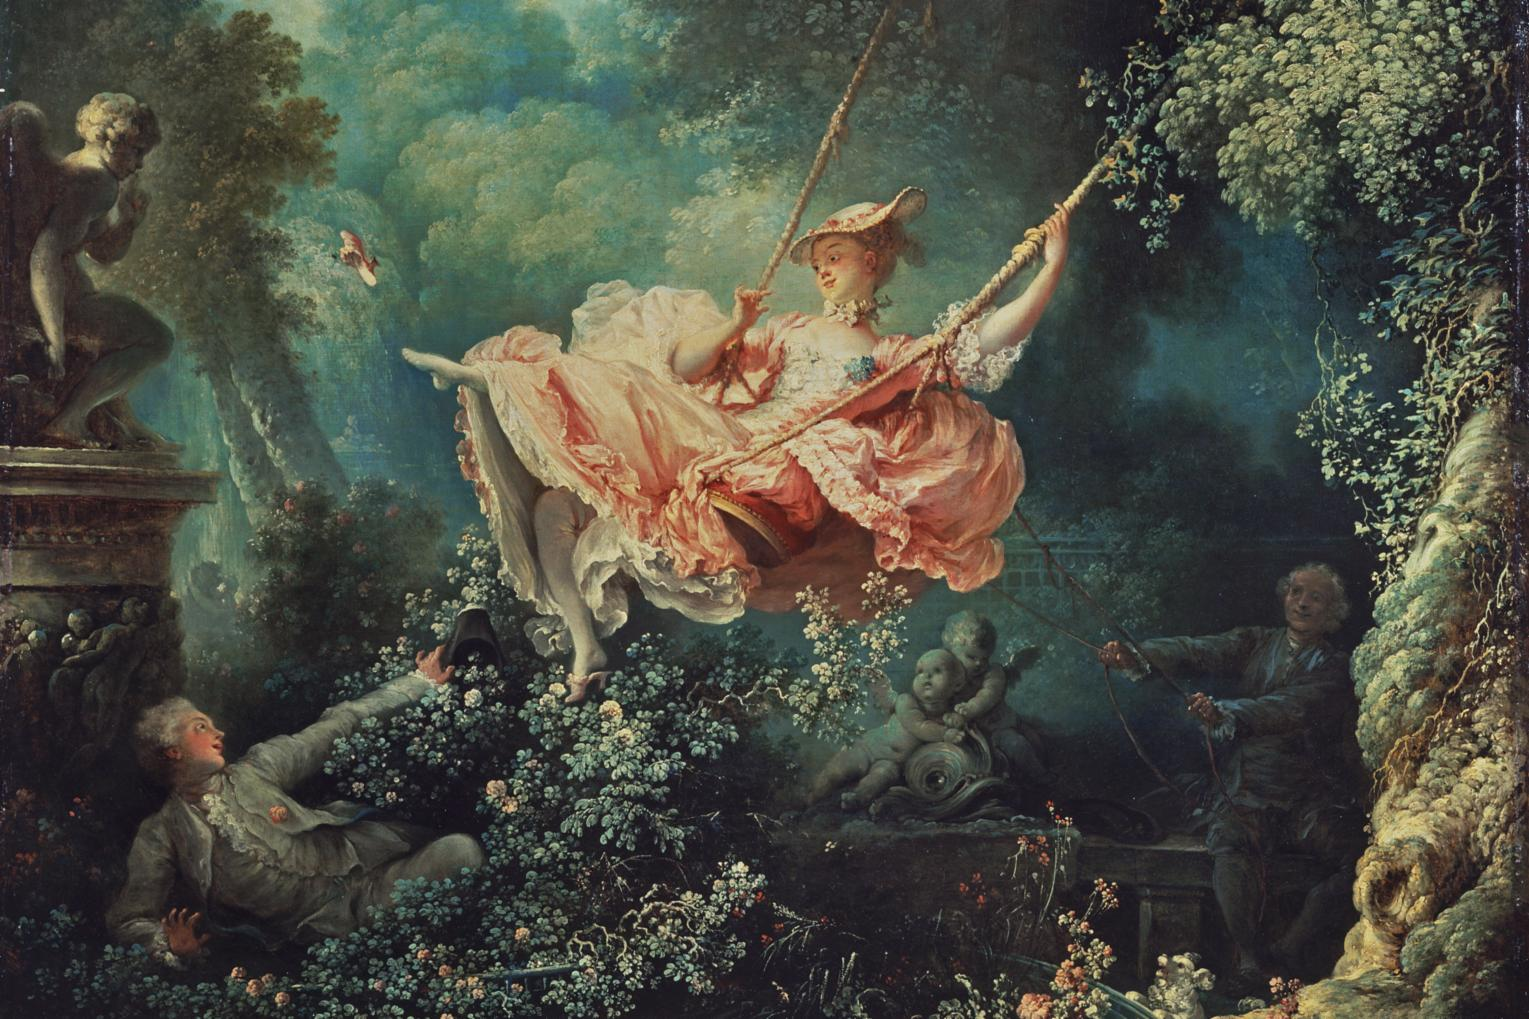  Bức The Swing của họa sĩ Jean-Honoré Fragonard (1767)